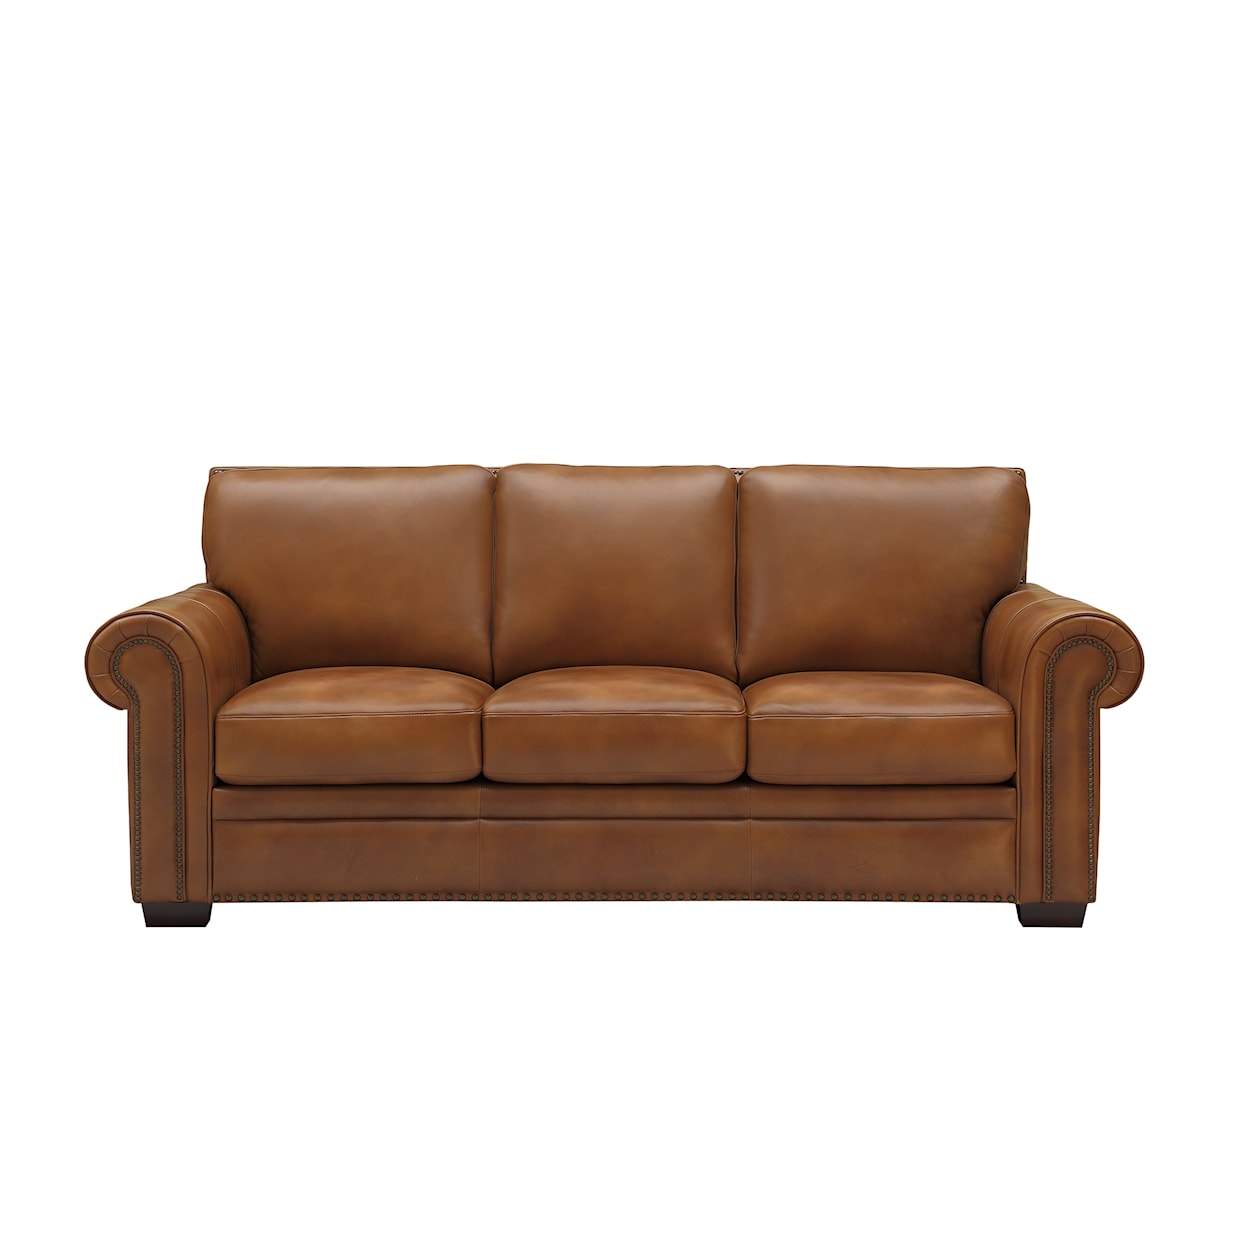 GTR Leather 6369 6369 Sofa